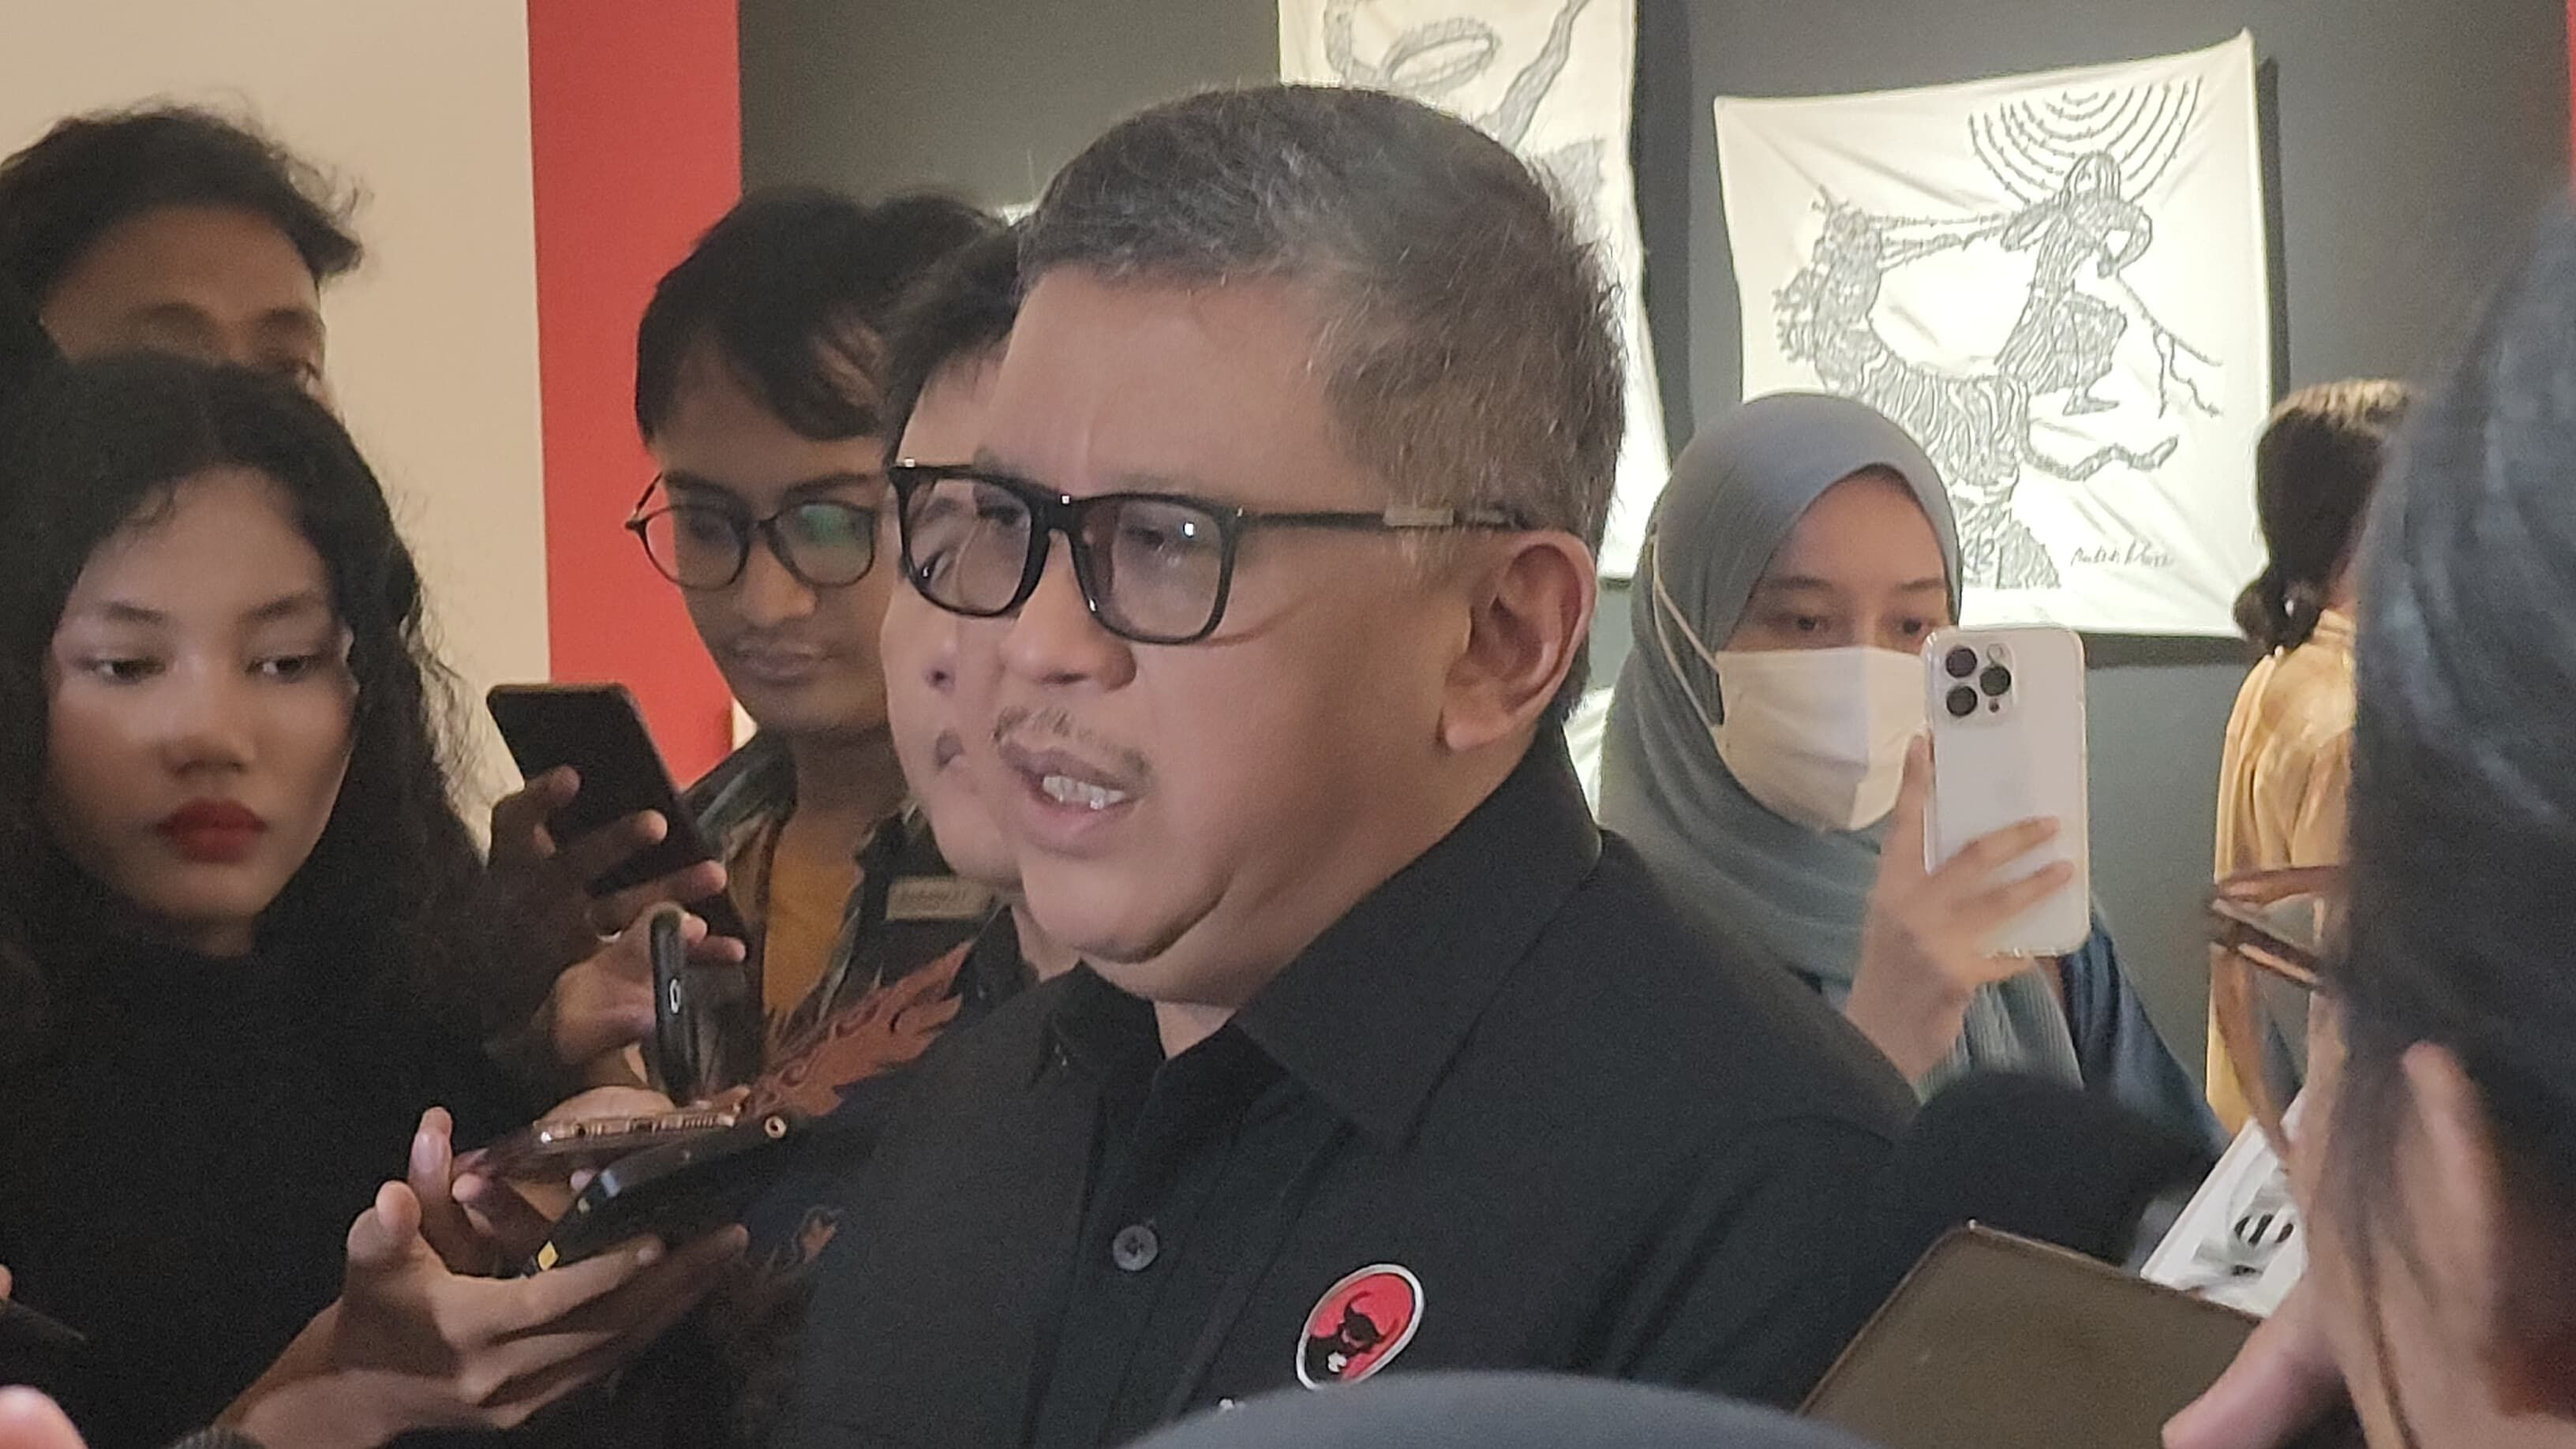 Selain Khofifah, PDI-P Buka Opsi Usung Kader Sendiri di Pilkada Jatim